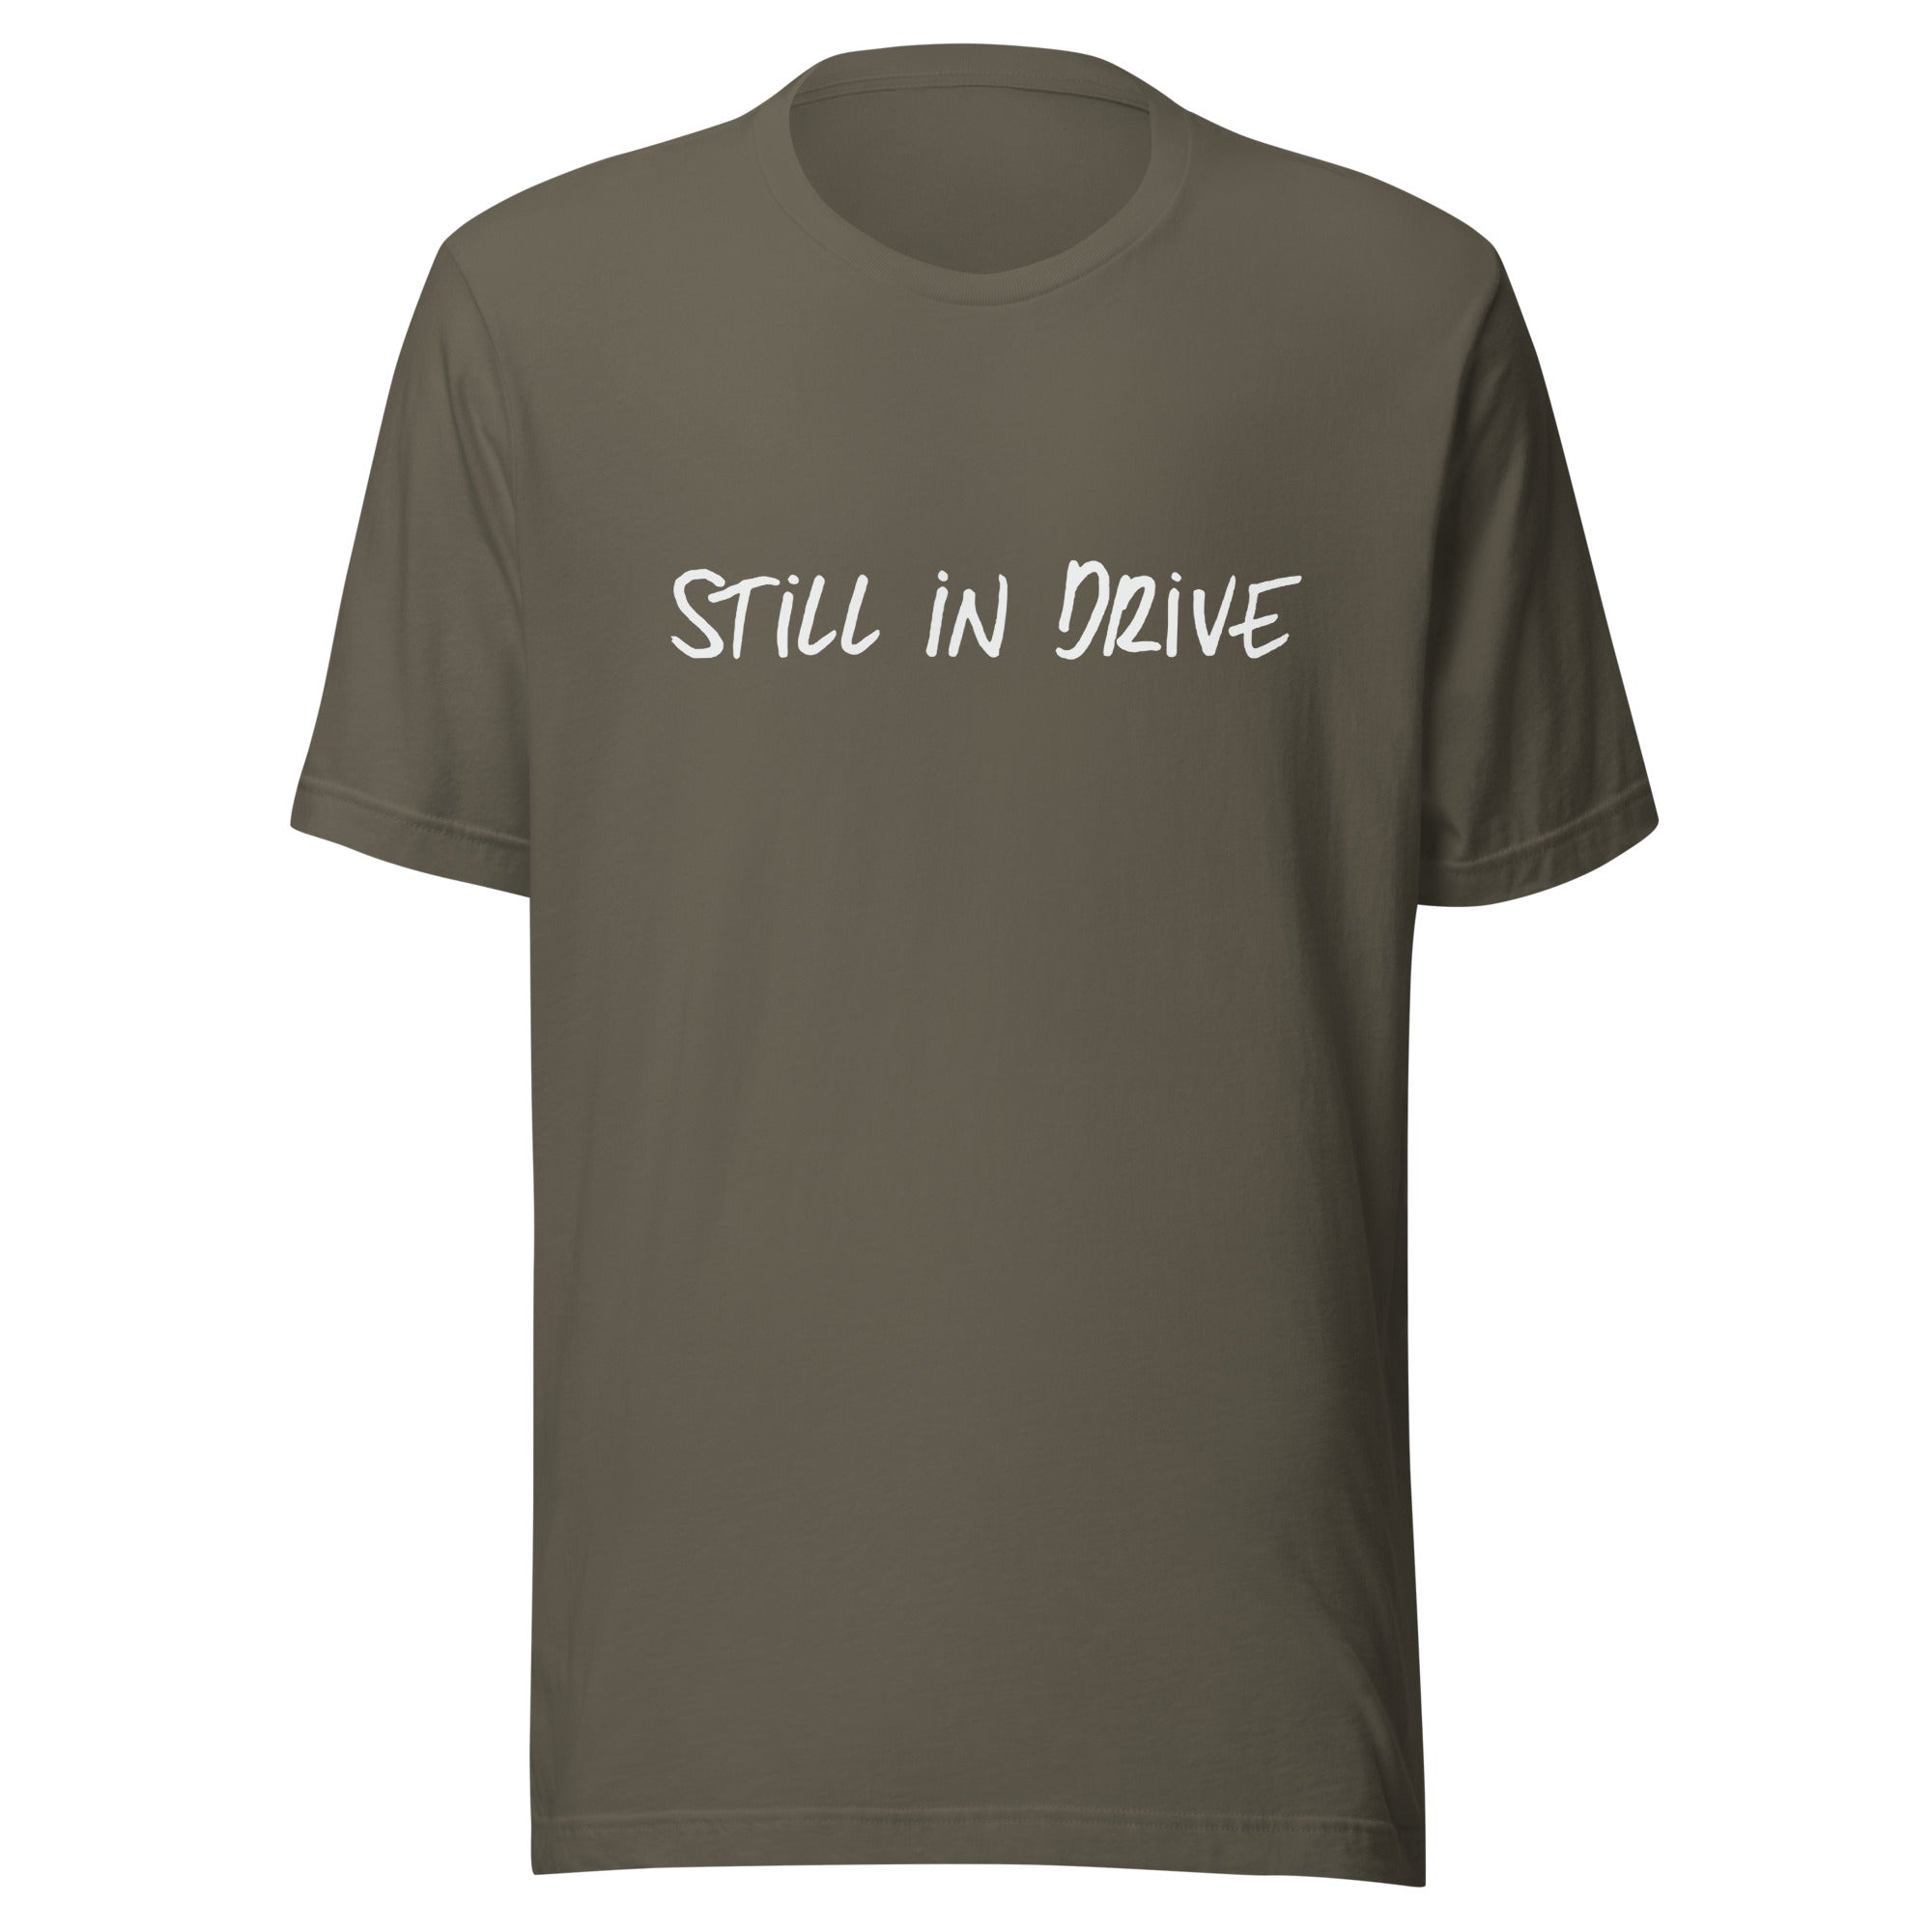 Tia Einarsen - "Still In Drive" - Unisex t-shirt